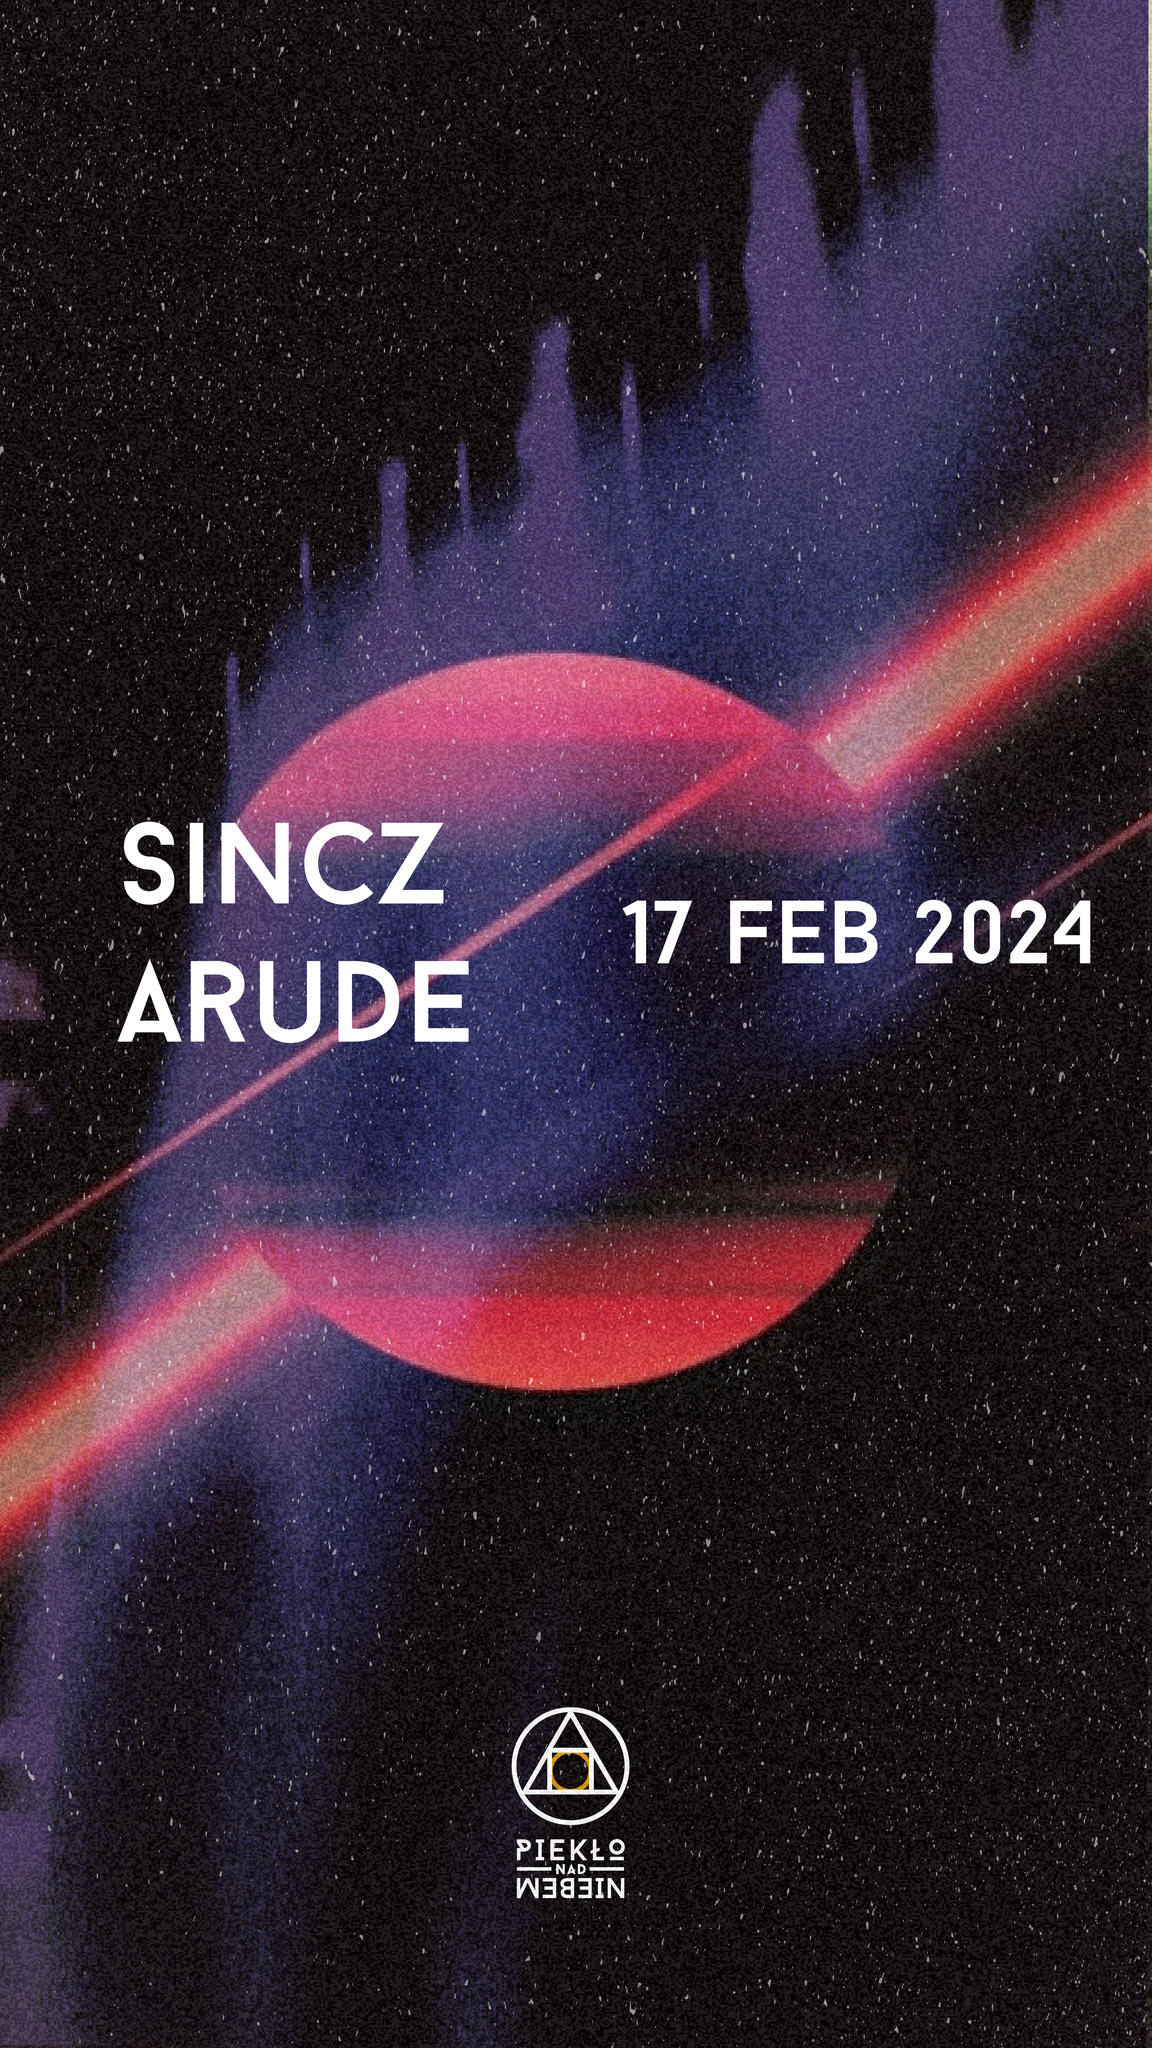 Sincz & Arude - Página frontal